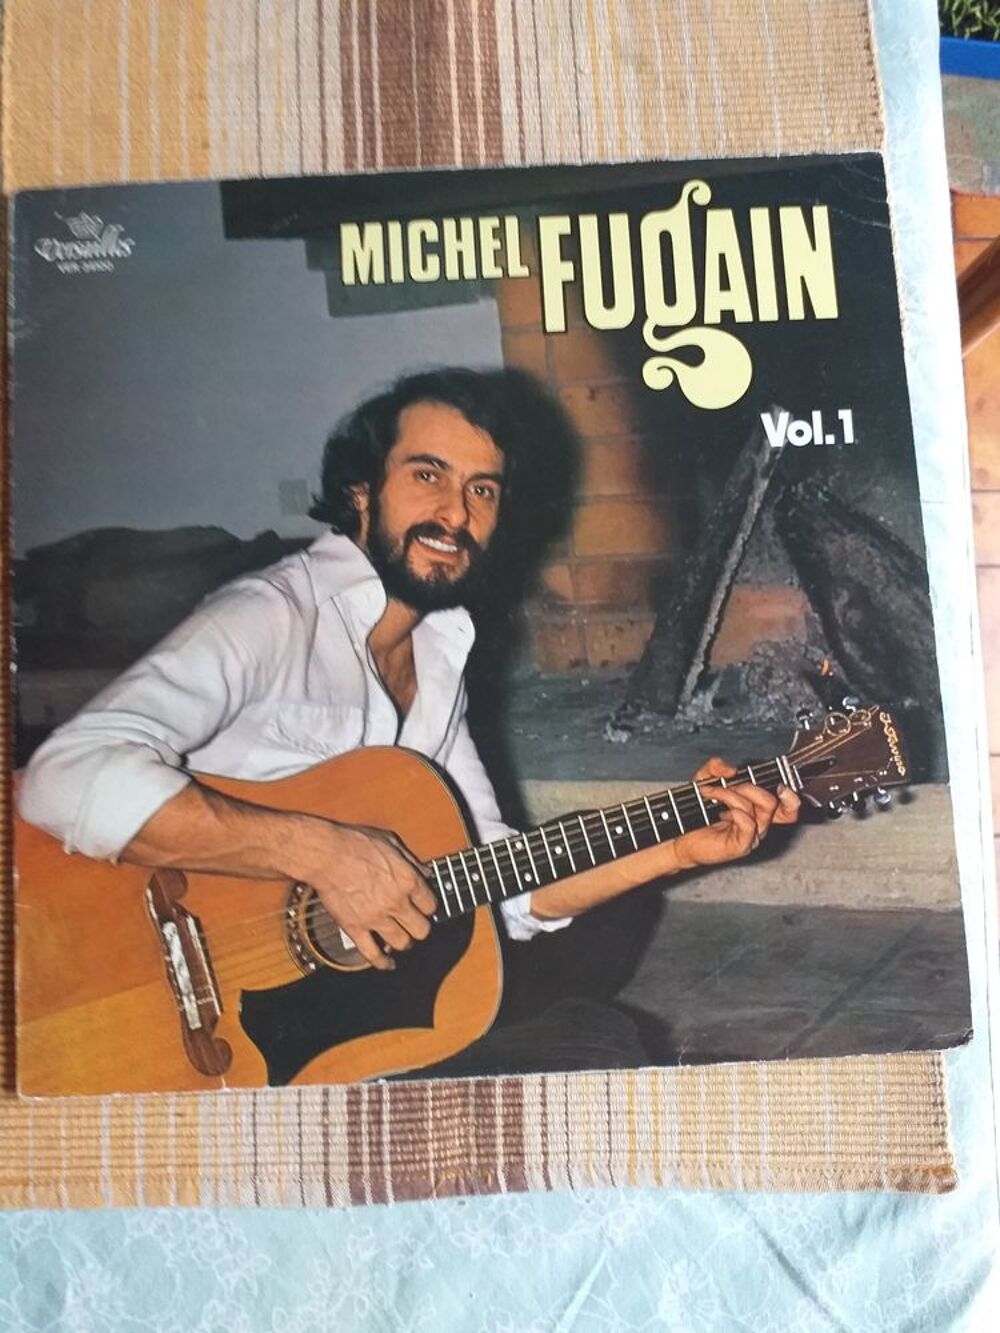 VYNIL 33 TOURS MICHEL FUGAIN CD et vinyles